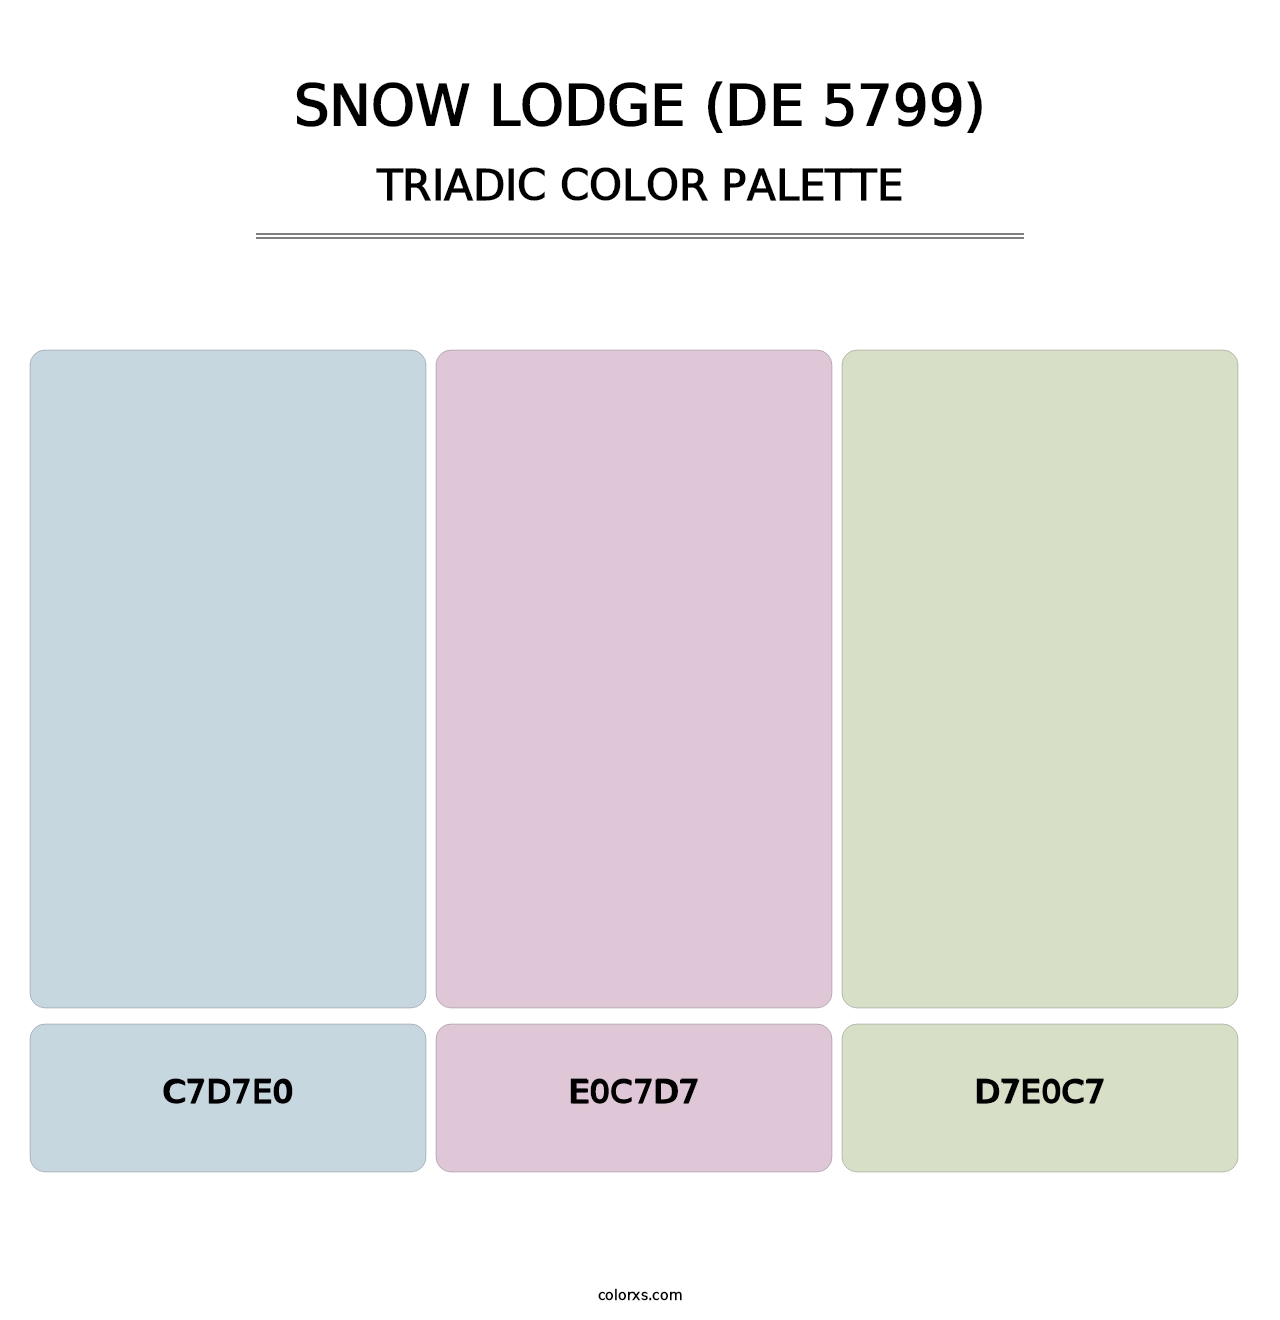 Snow Lodge (DE 5799) - Triadic Color Palette